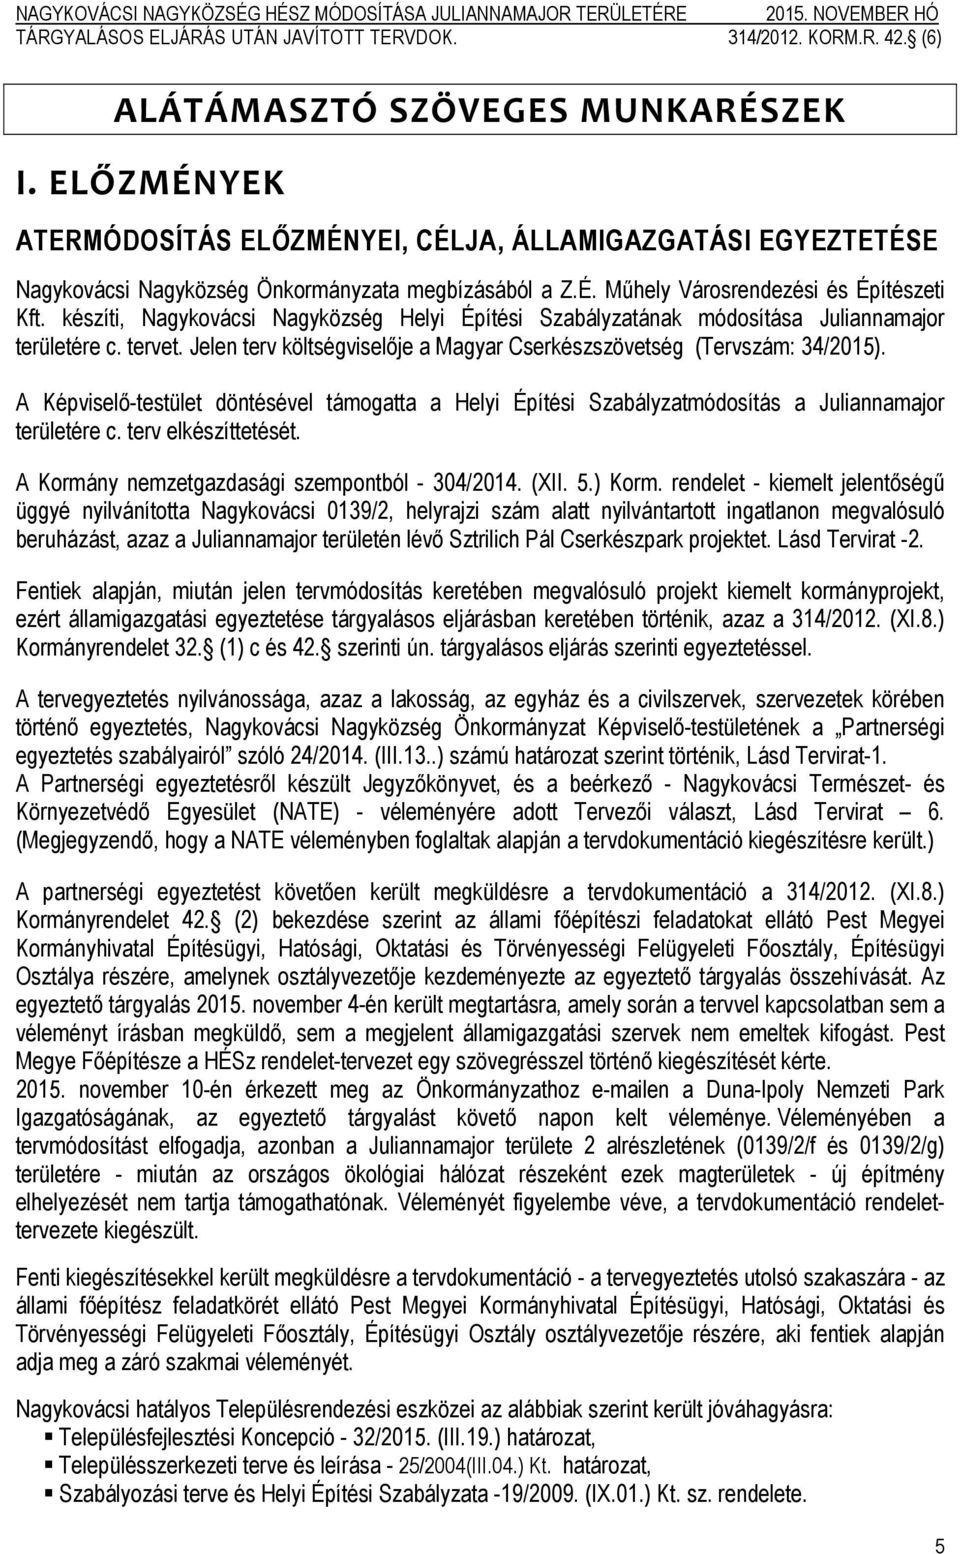 A Képviselő-testület döntésével támogatta a Helyi Építési Szabályzatmódosítás a Juliannamajor területére c. terv elkészíttetését. A Kormány nemzetgazdasági szempontból - 304/2014. (XII. 5.) Korm.